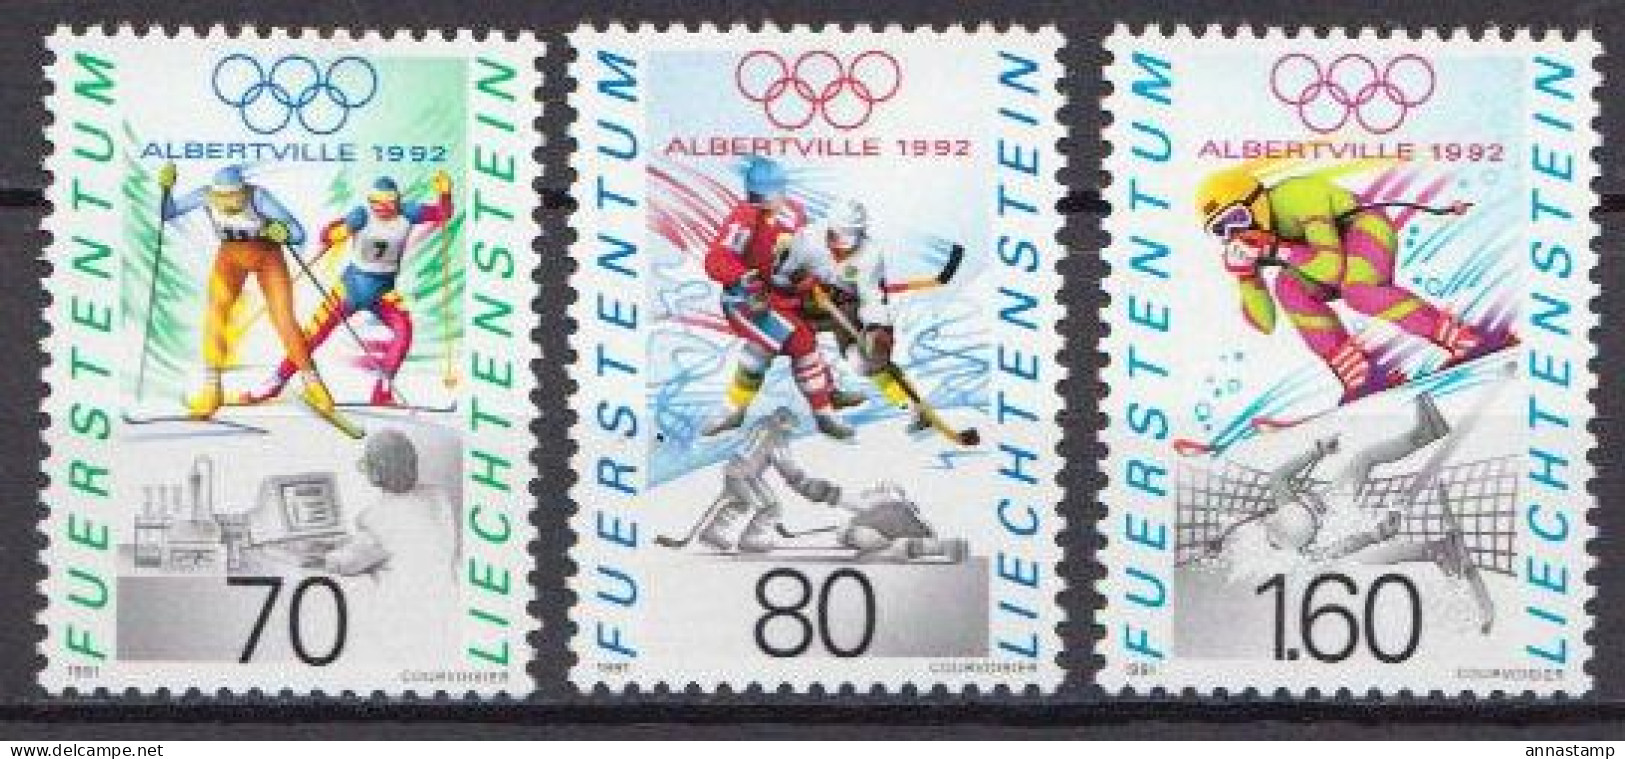 Liechtenstein MNH Set - Invierno 1992: Albertville